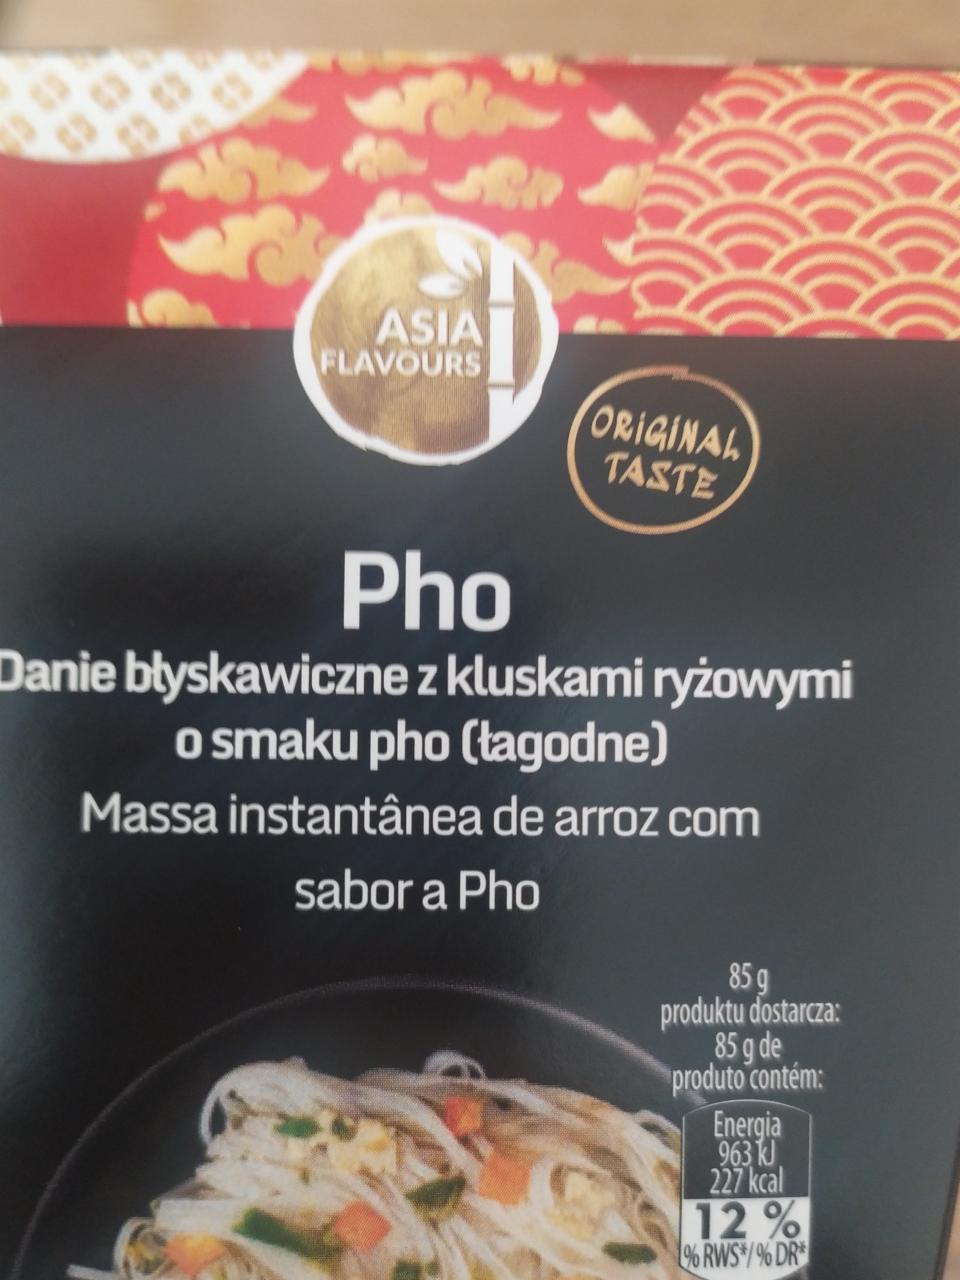 Fotografie - Danie błyskawiczne z kluskam ryżowymi o smaku pho Asia Flavours